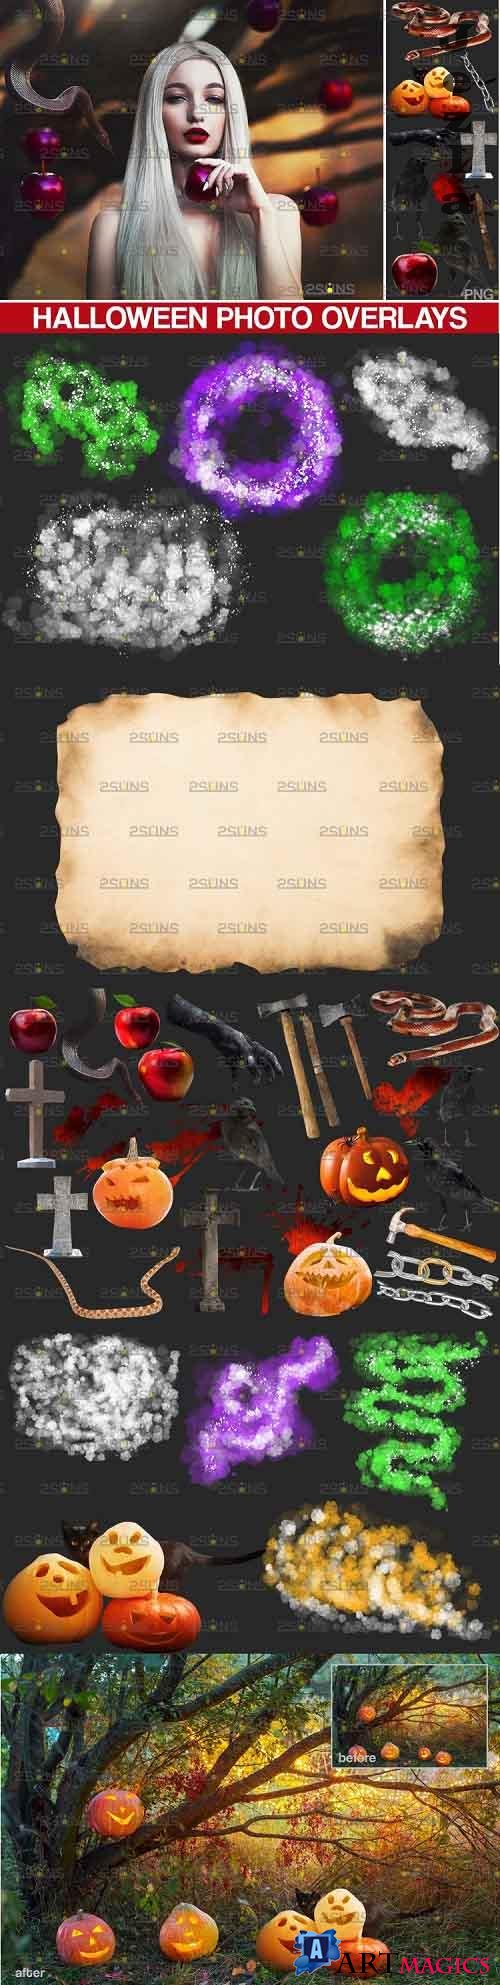 Halloween clipart & Halloween overlays, Photoshop overlay - 909524